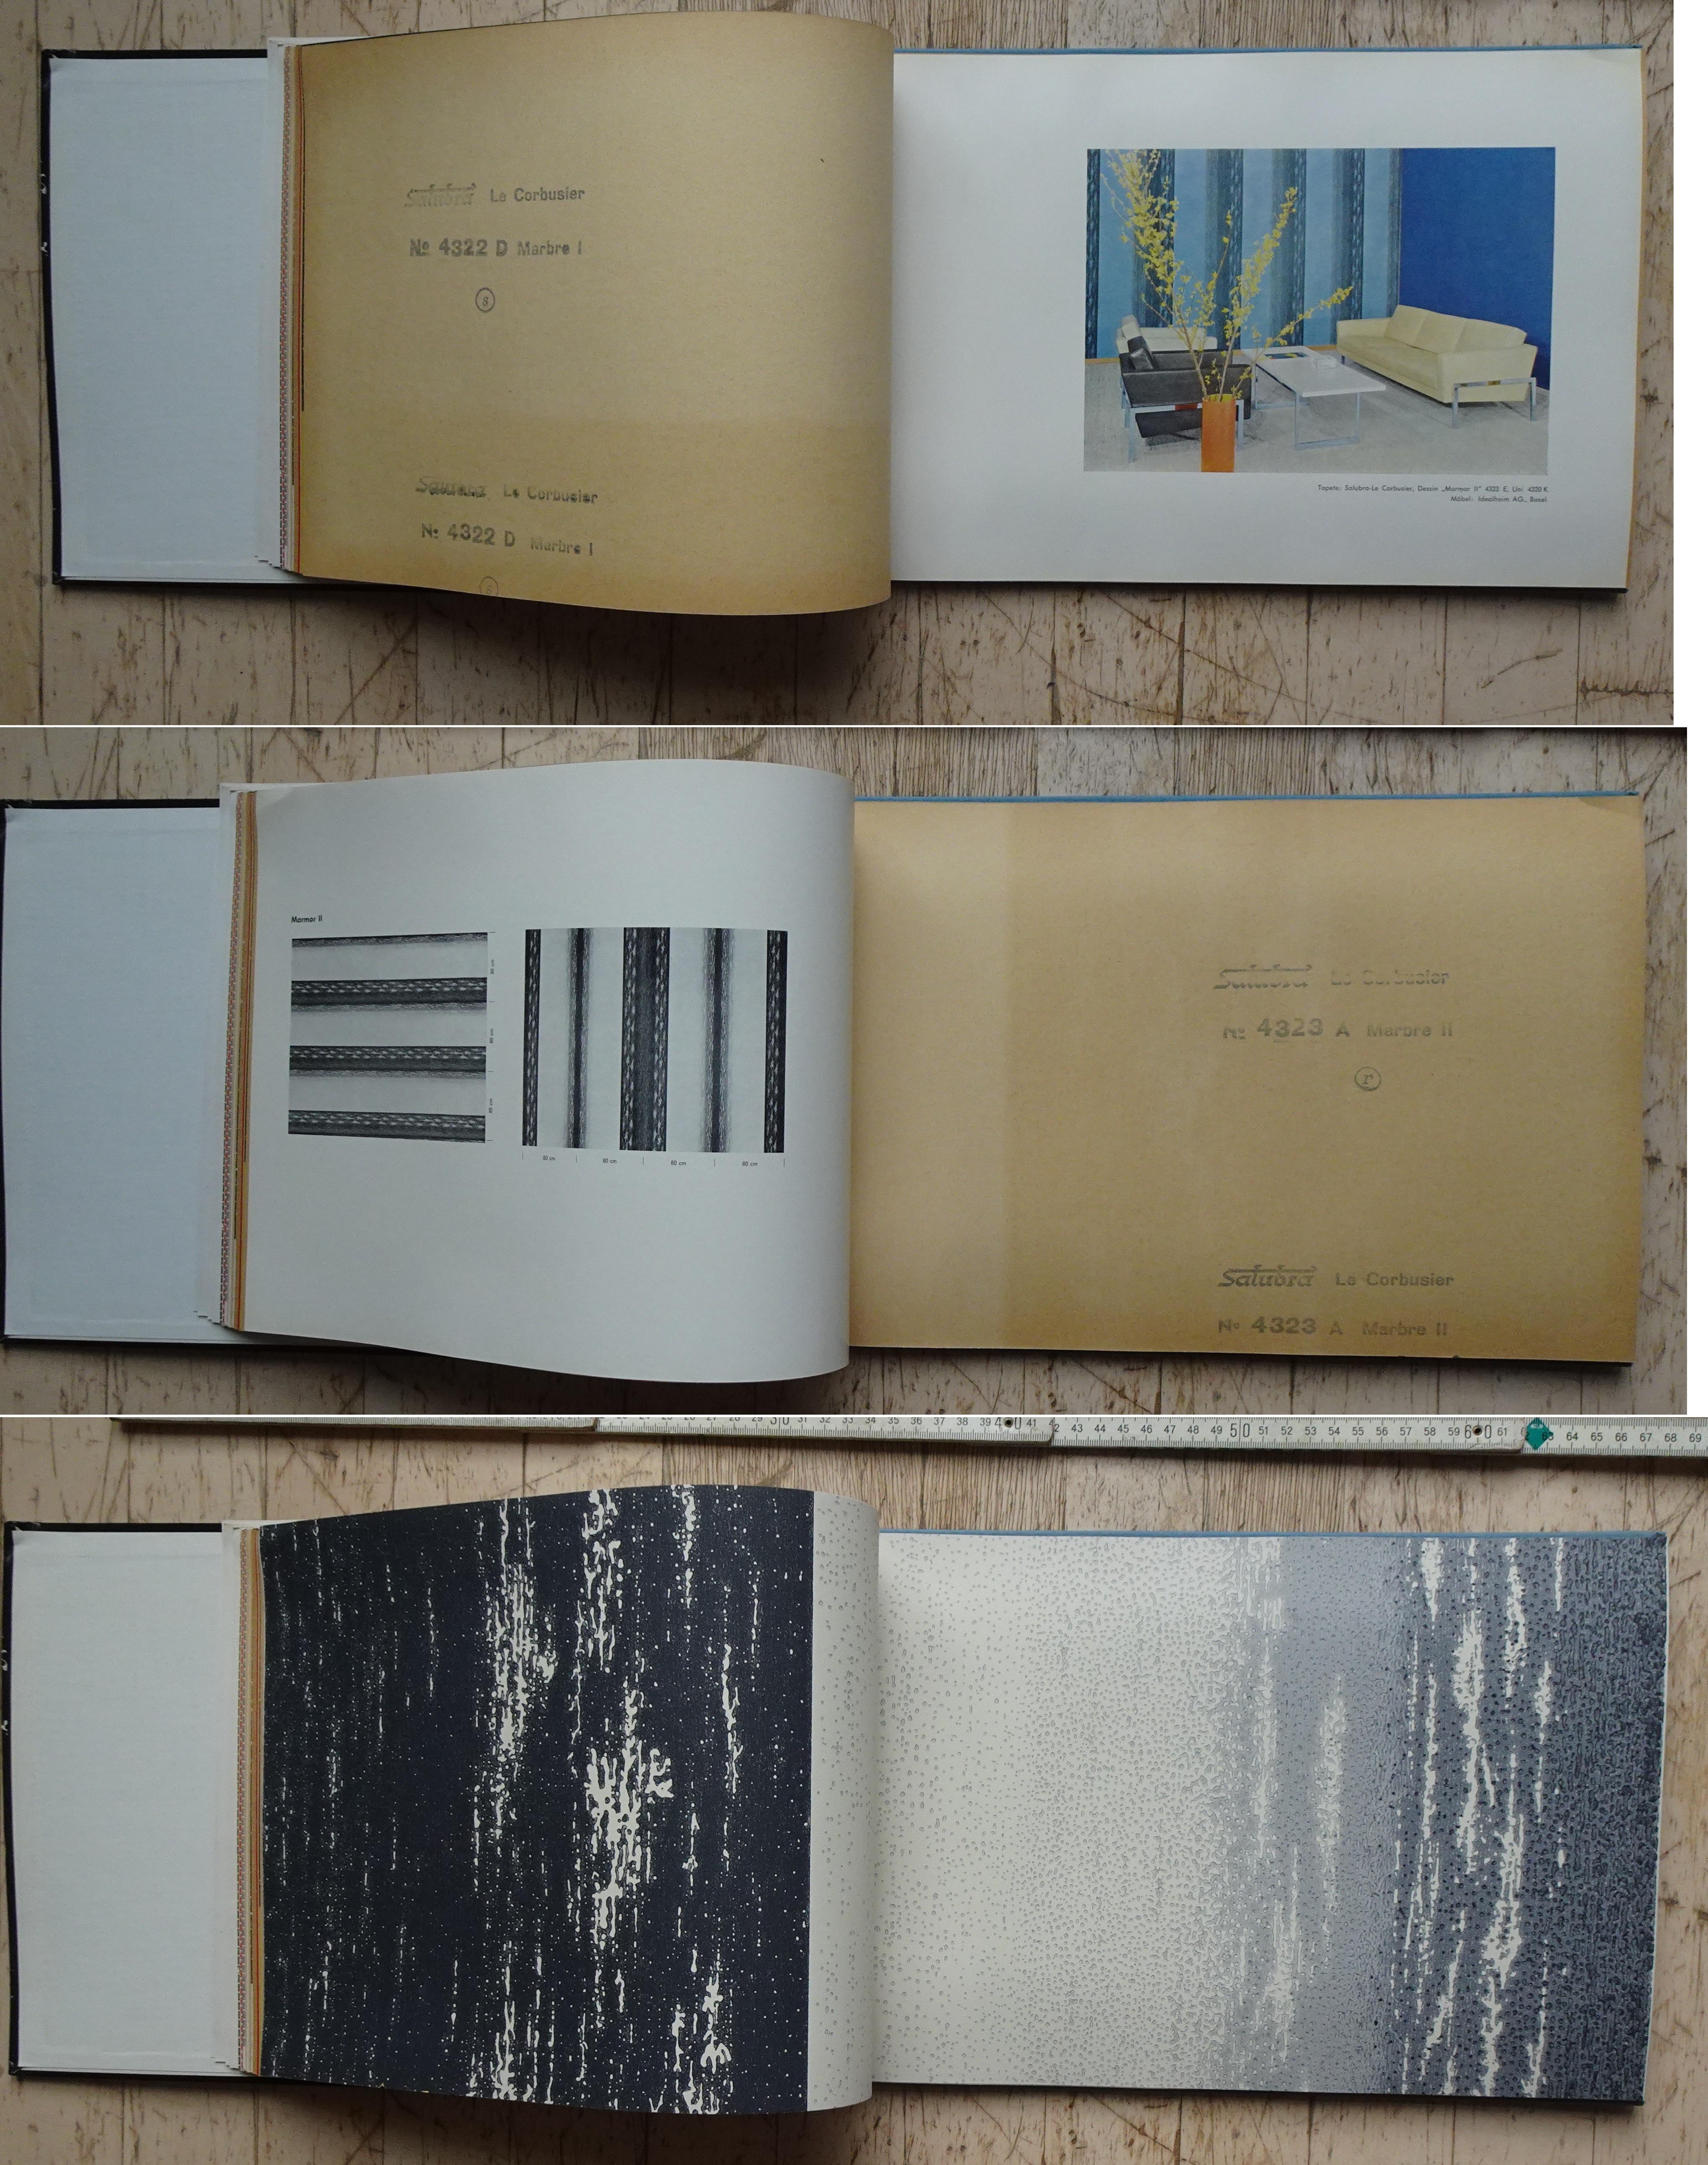 Fabric Le Corbusier Salubra Wallpaper Book Second Edition 1959 For Sale